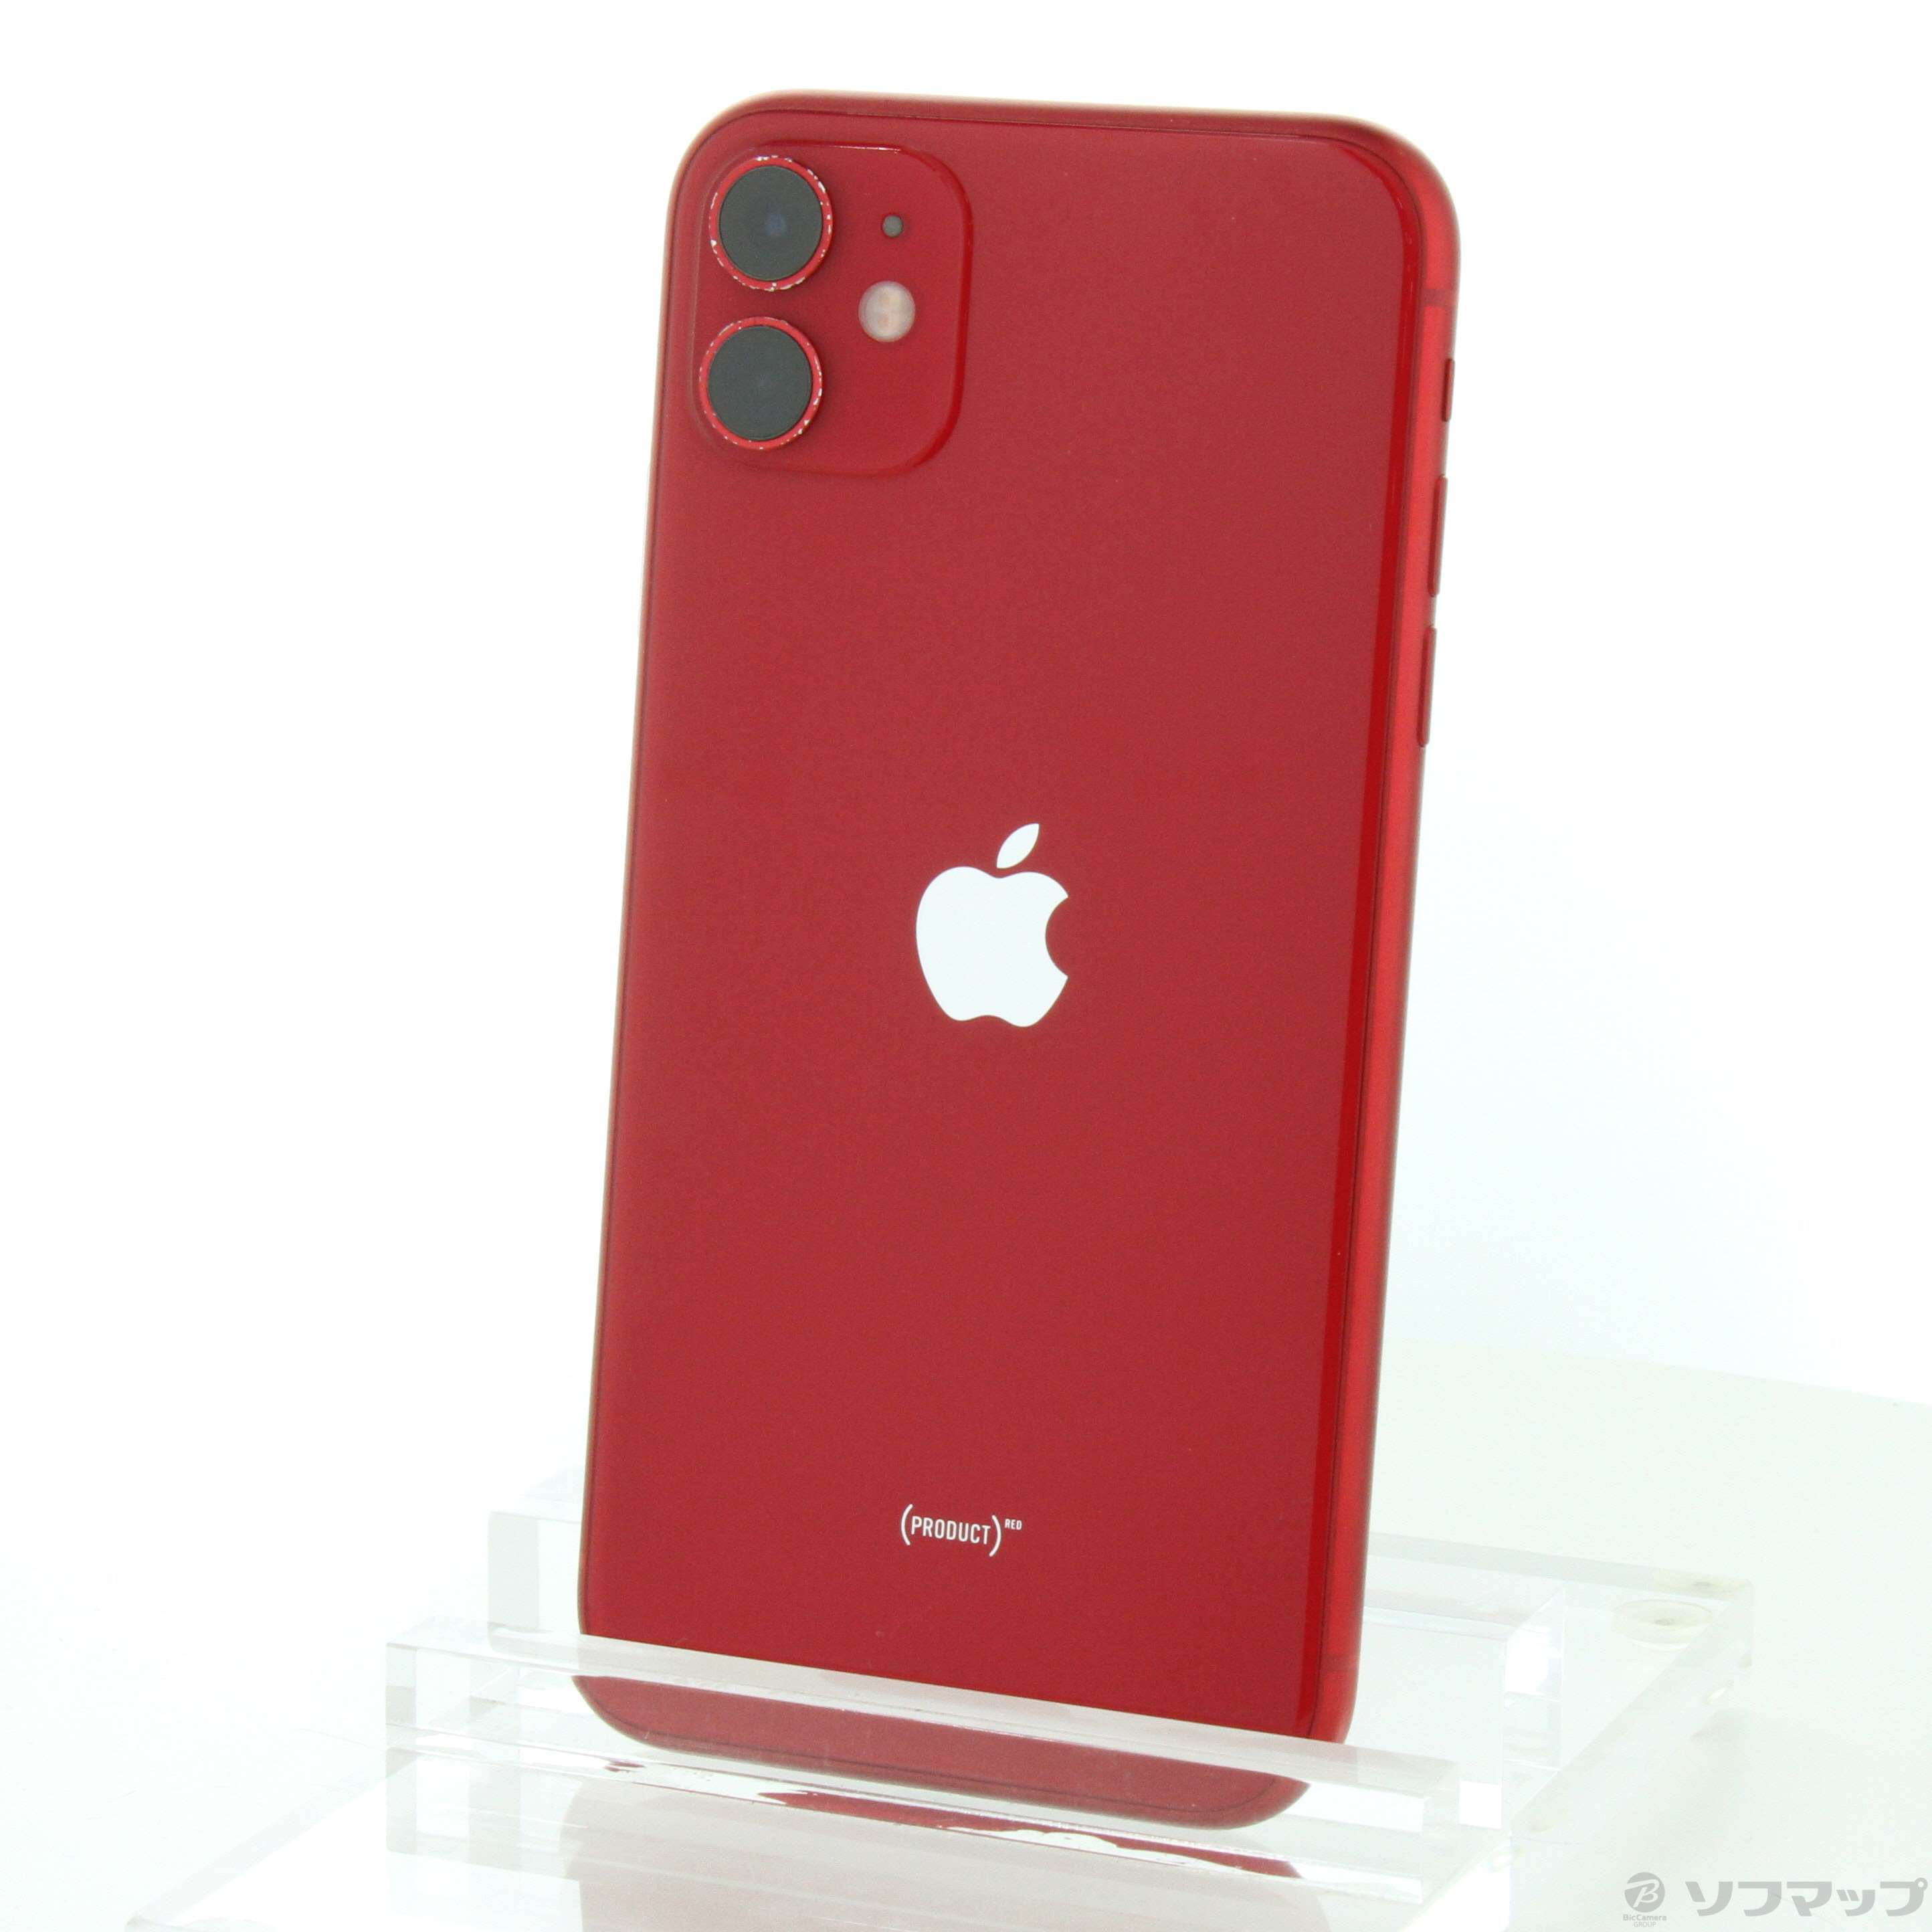 最低価格の Apple iPhone11 64GB レッド MWLV2J/A スマートフォン本体 